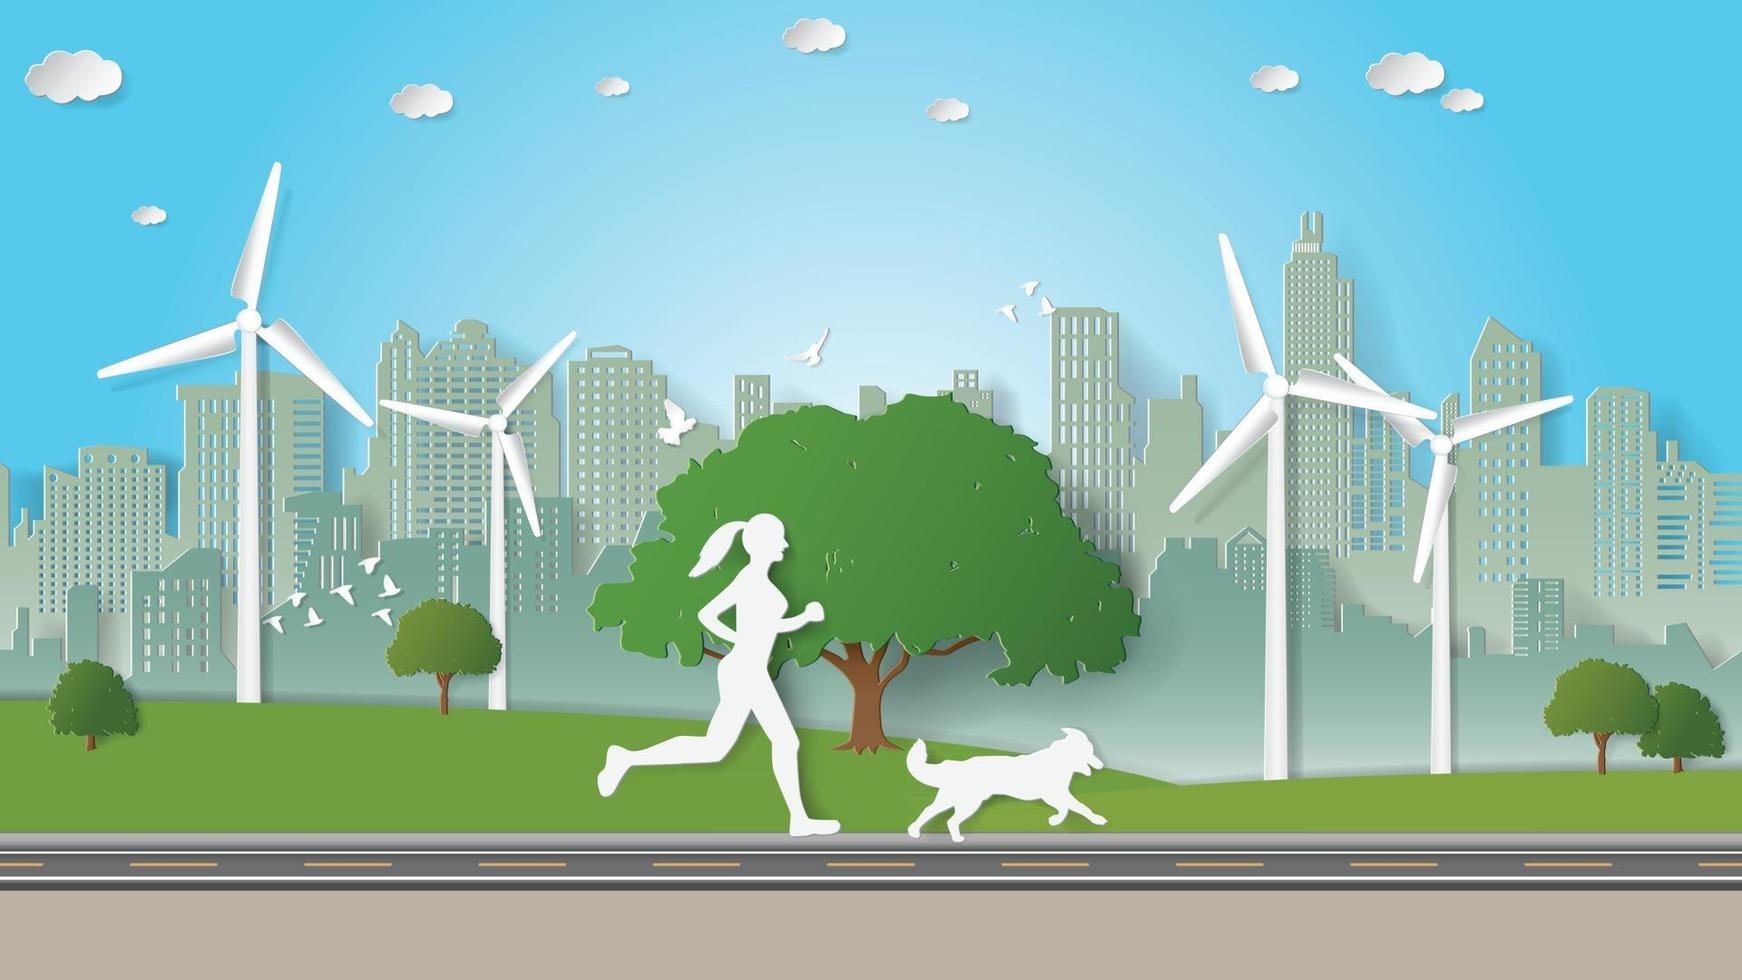 papier vouwen kunst origami stijl vectorillustratie. concept van groene duurzame energie ecologie milieuvriendelijk, solo buitenactiviteiten, vrouw en haar hond rennen alleen in stadsparken. vector